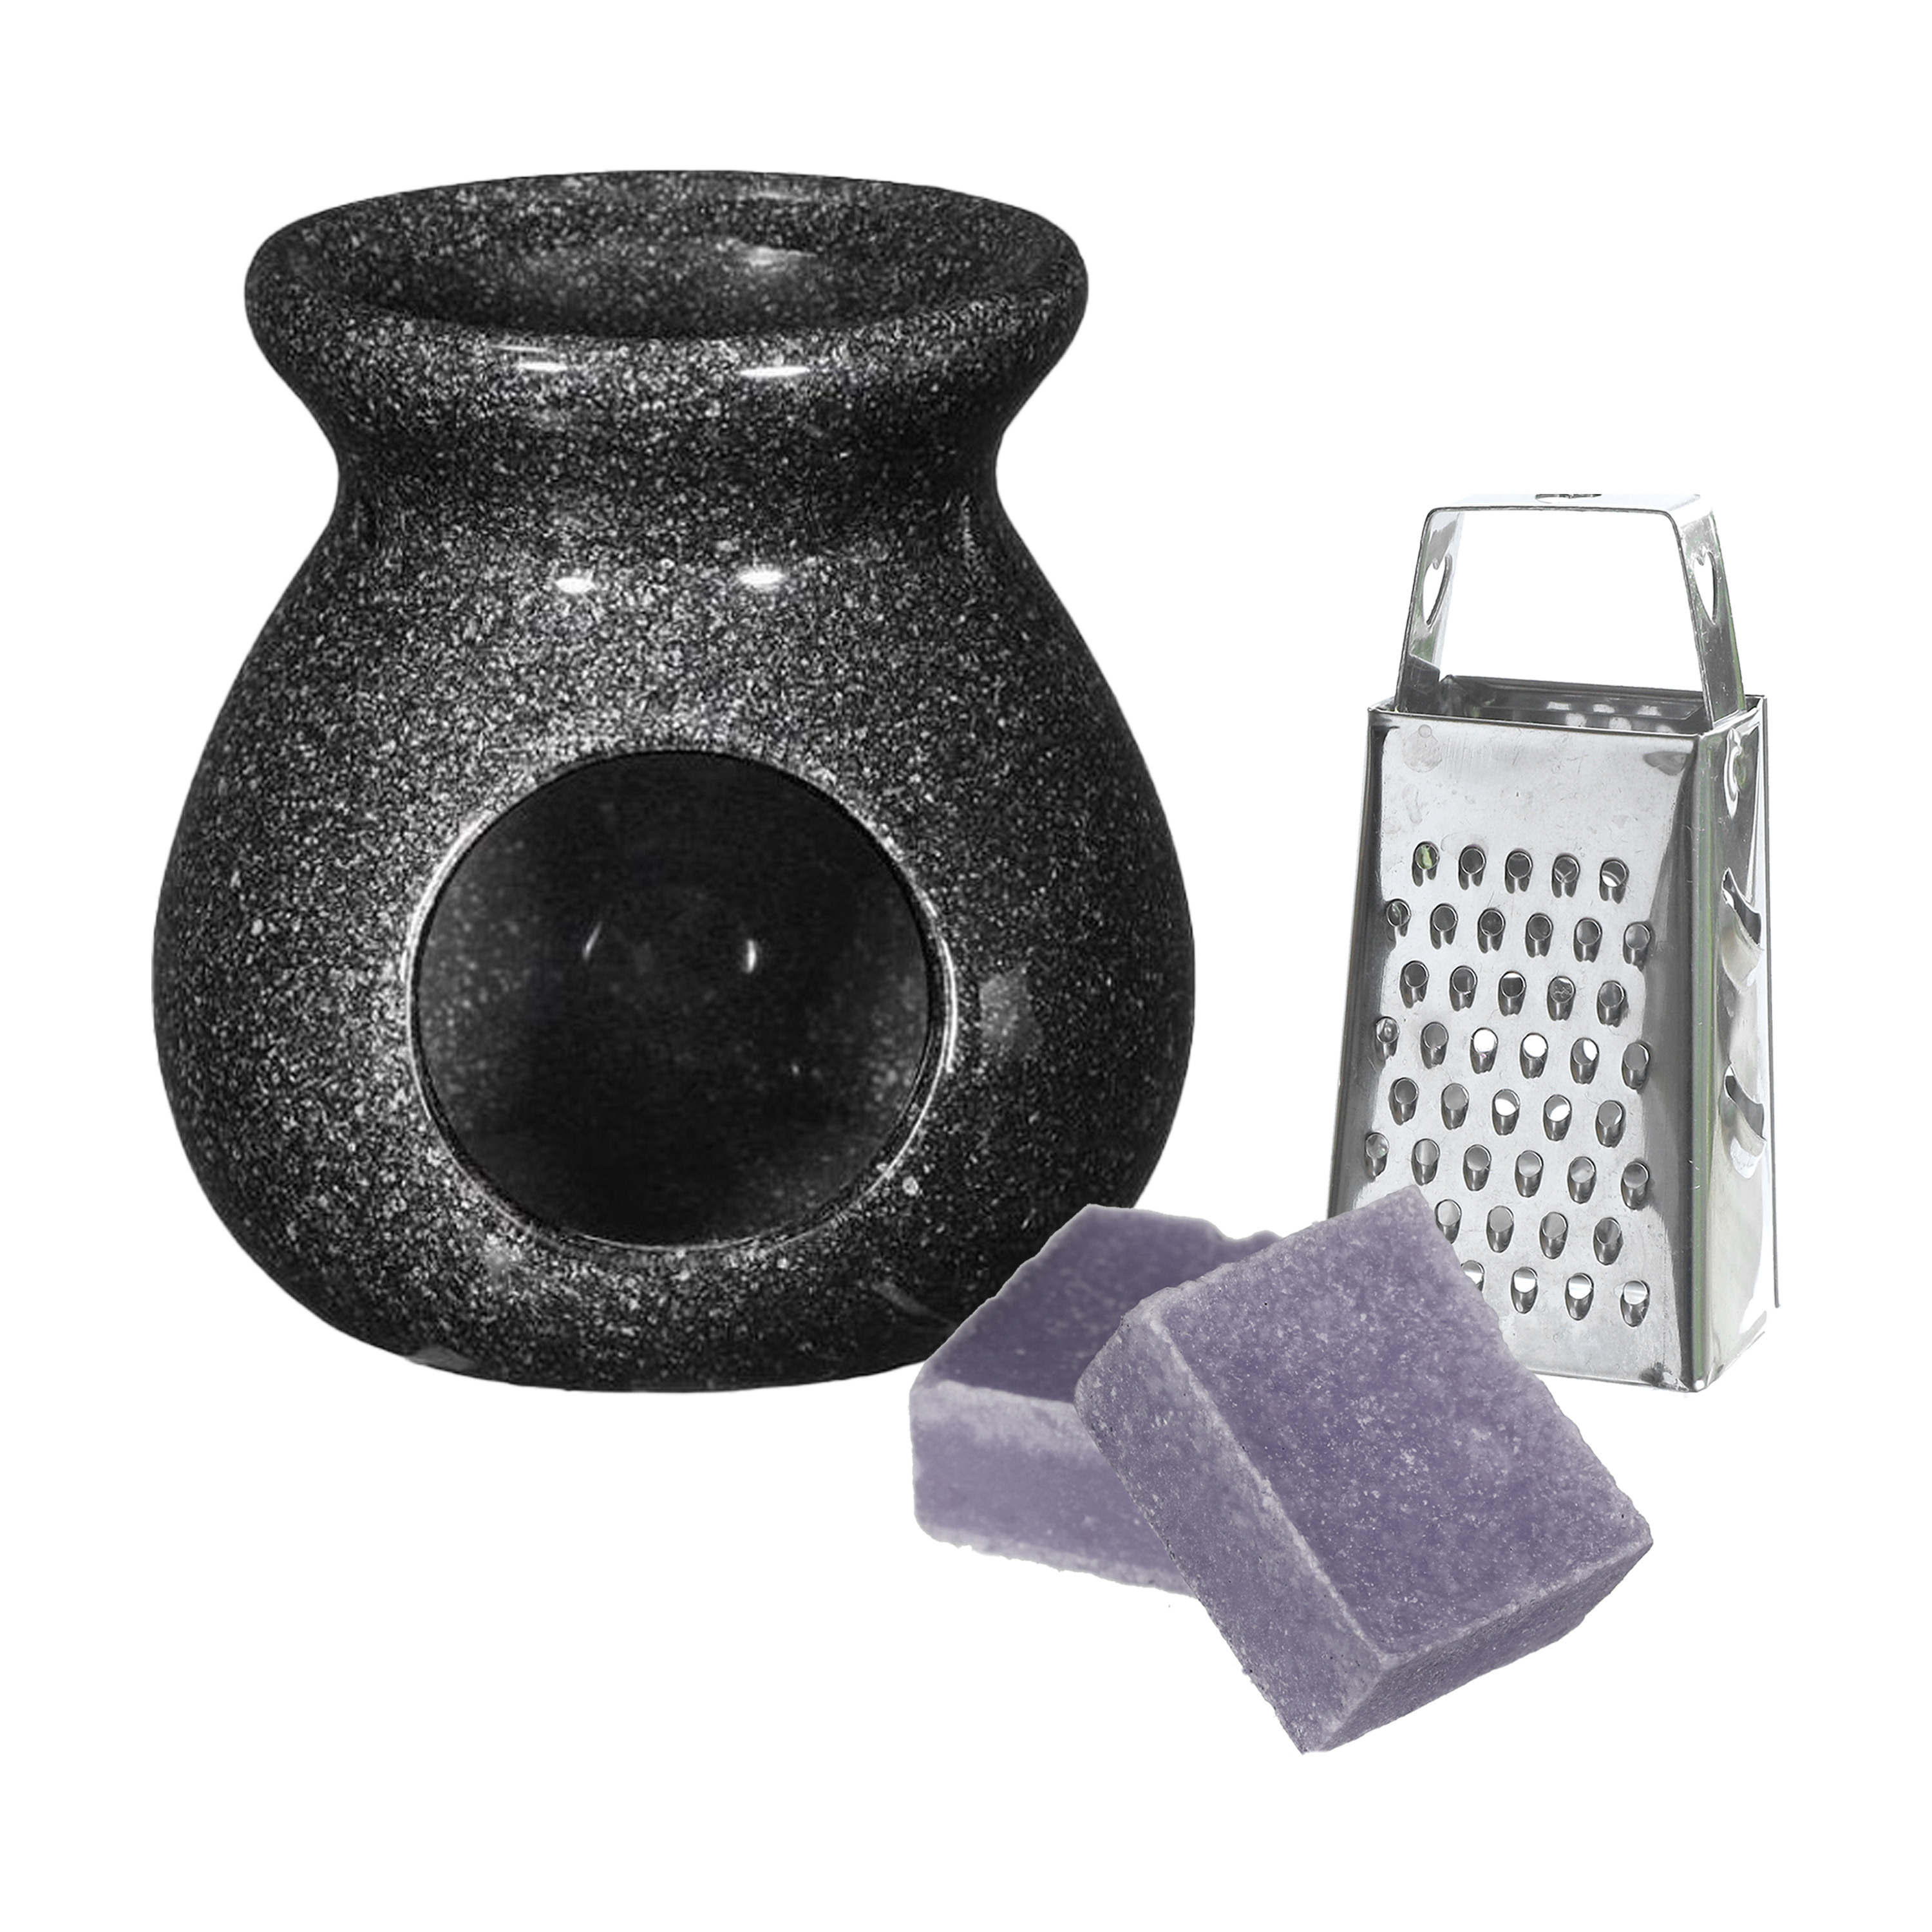 Amberblokjes-geurblokjes cadeauset lavendel geur inclusief geurbrander en mini rasp